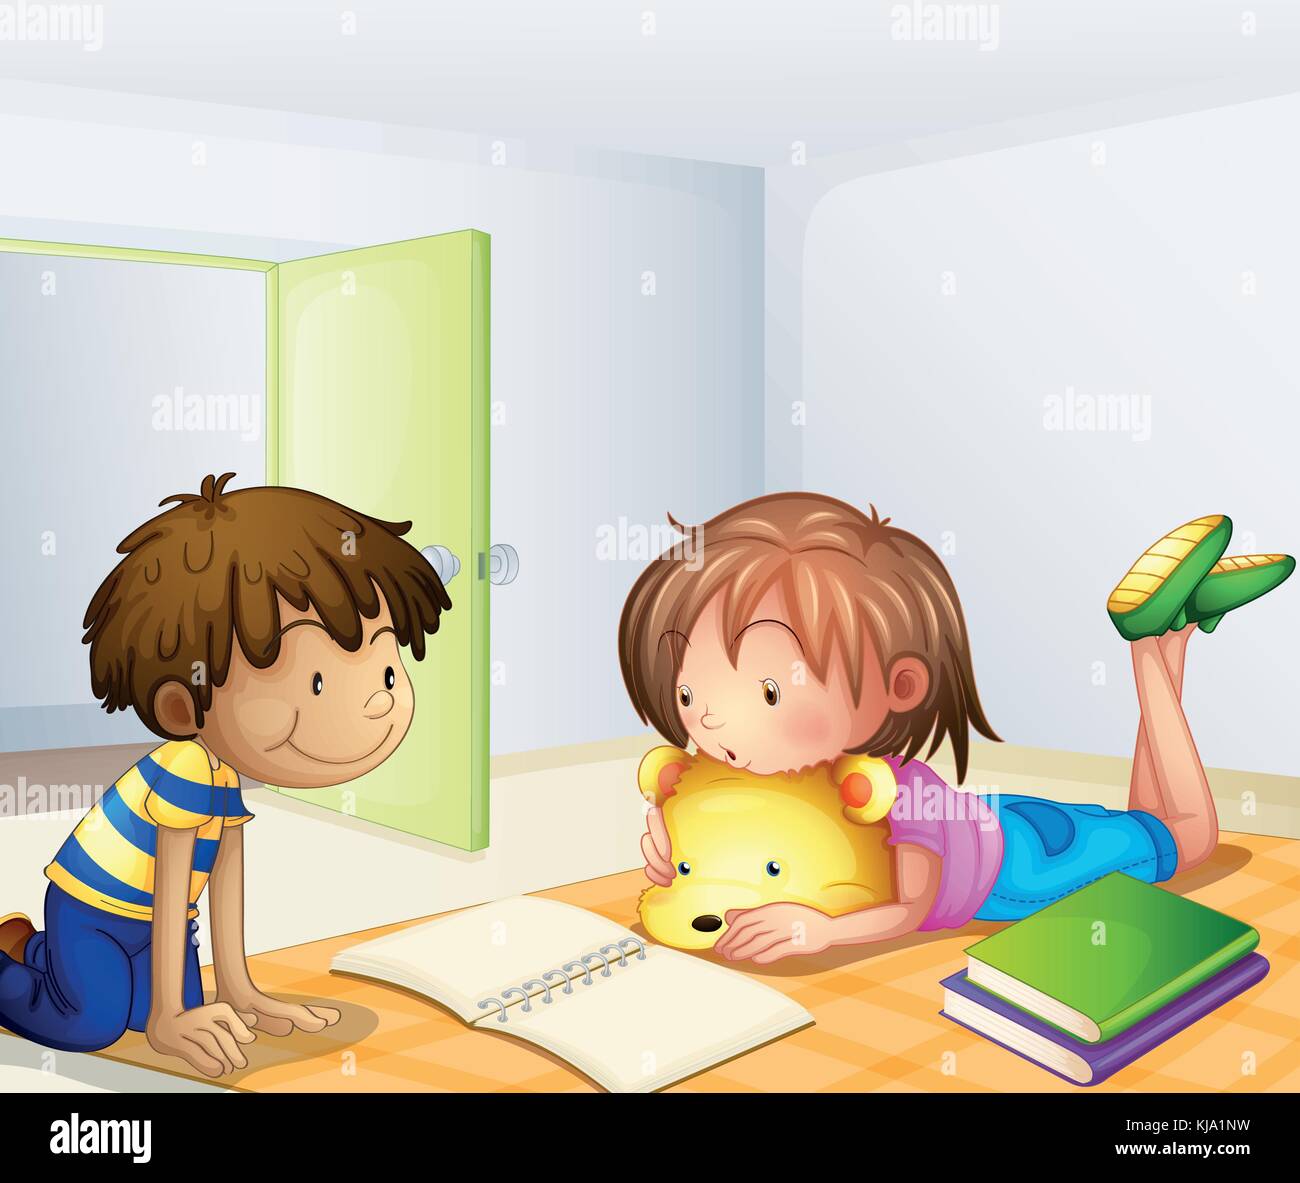 Abbildung: Kinder lernen in einem Raum Stock Vektor